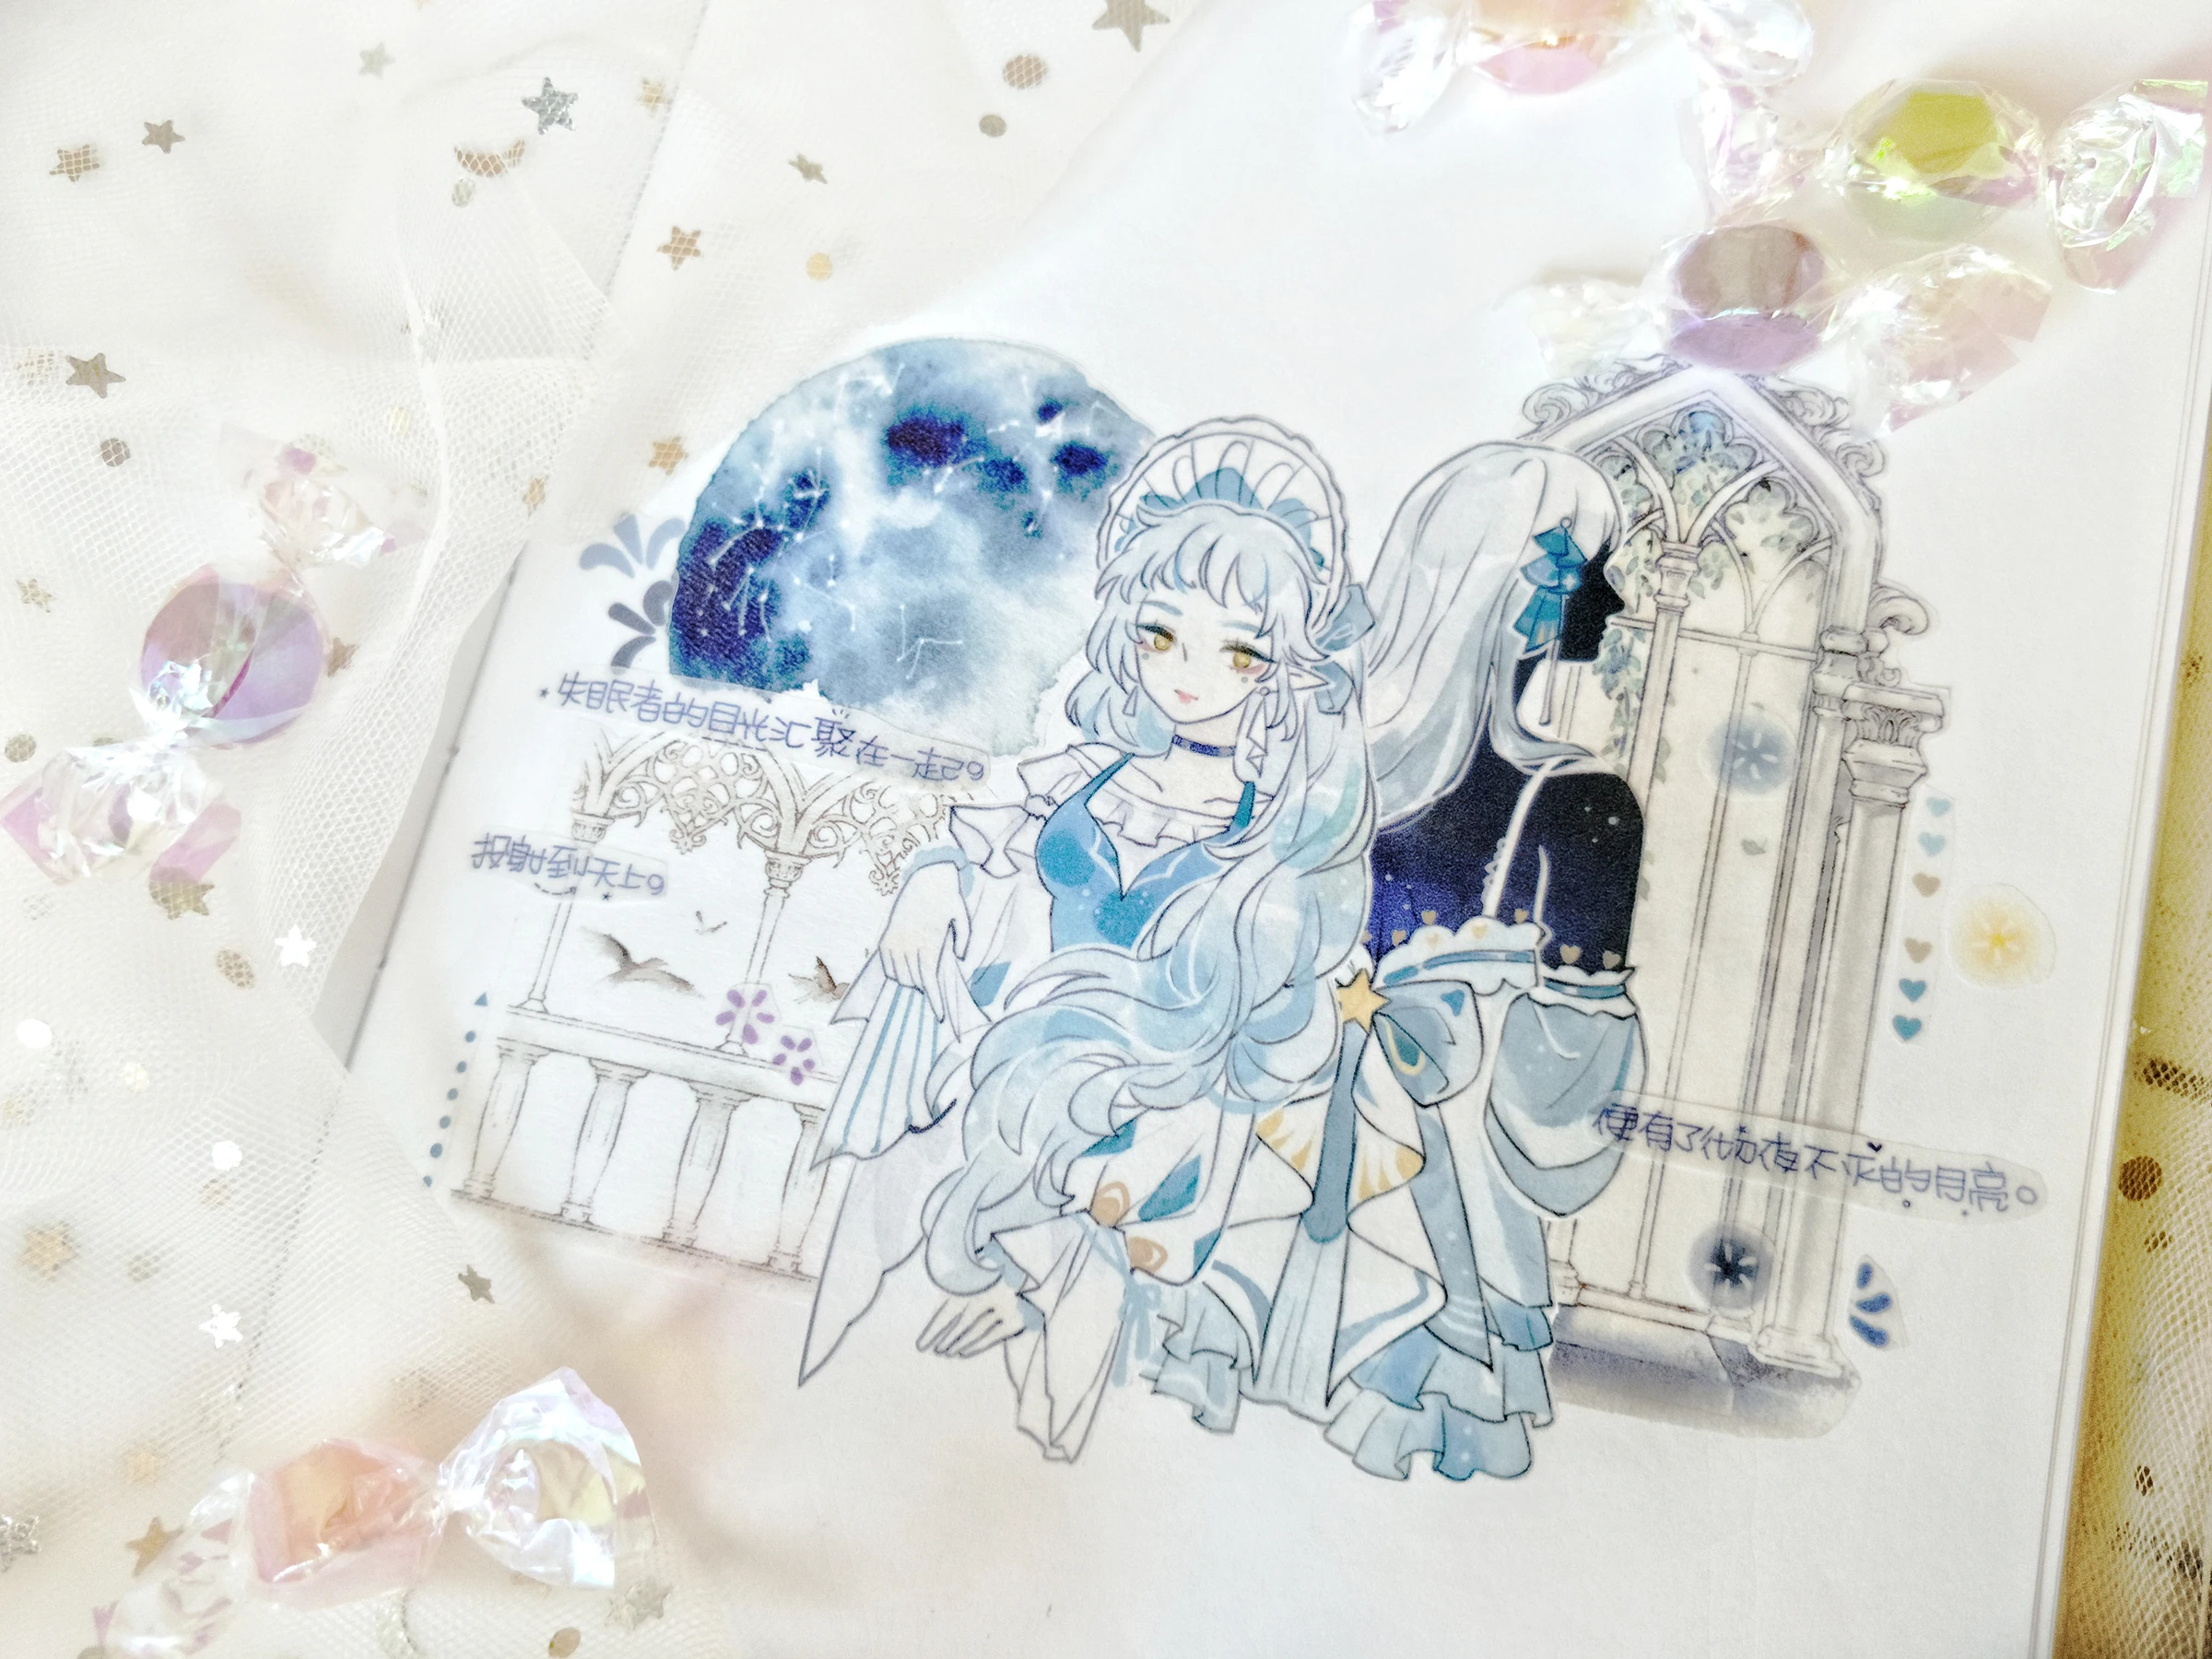 Специальные чернила 45 мм* 5 м синее платье Принцесса маскирующая лента аниме девушка васи лента DIY планировщик дневник в стиле Скрапбукинг с выпуском бумаги